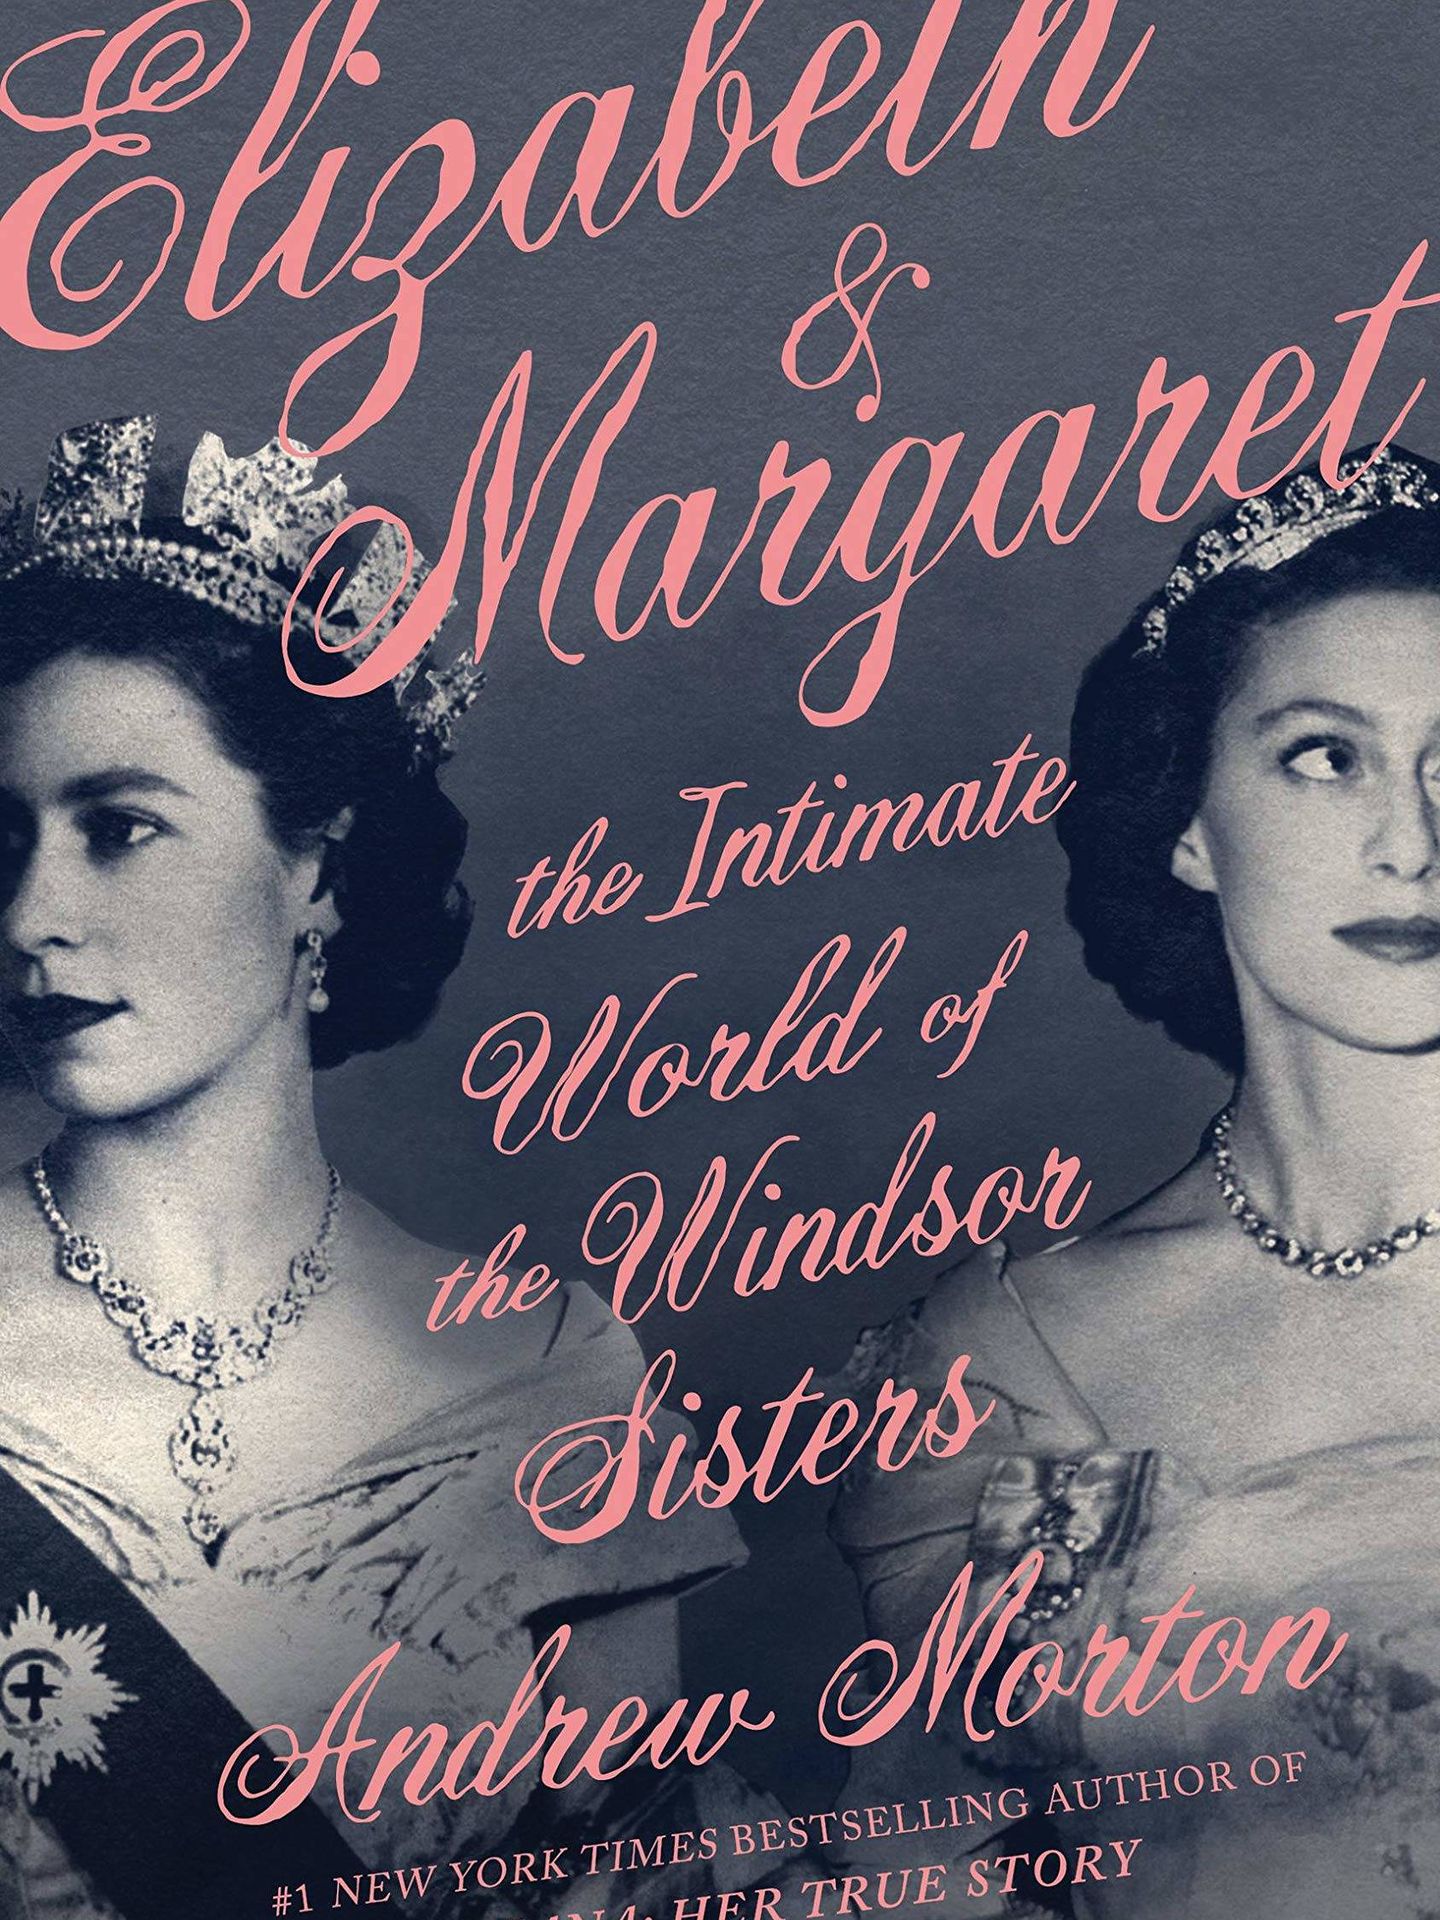   'Elizabeth & Margaret'. (Amazon)